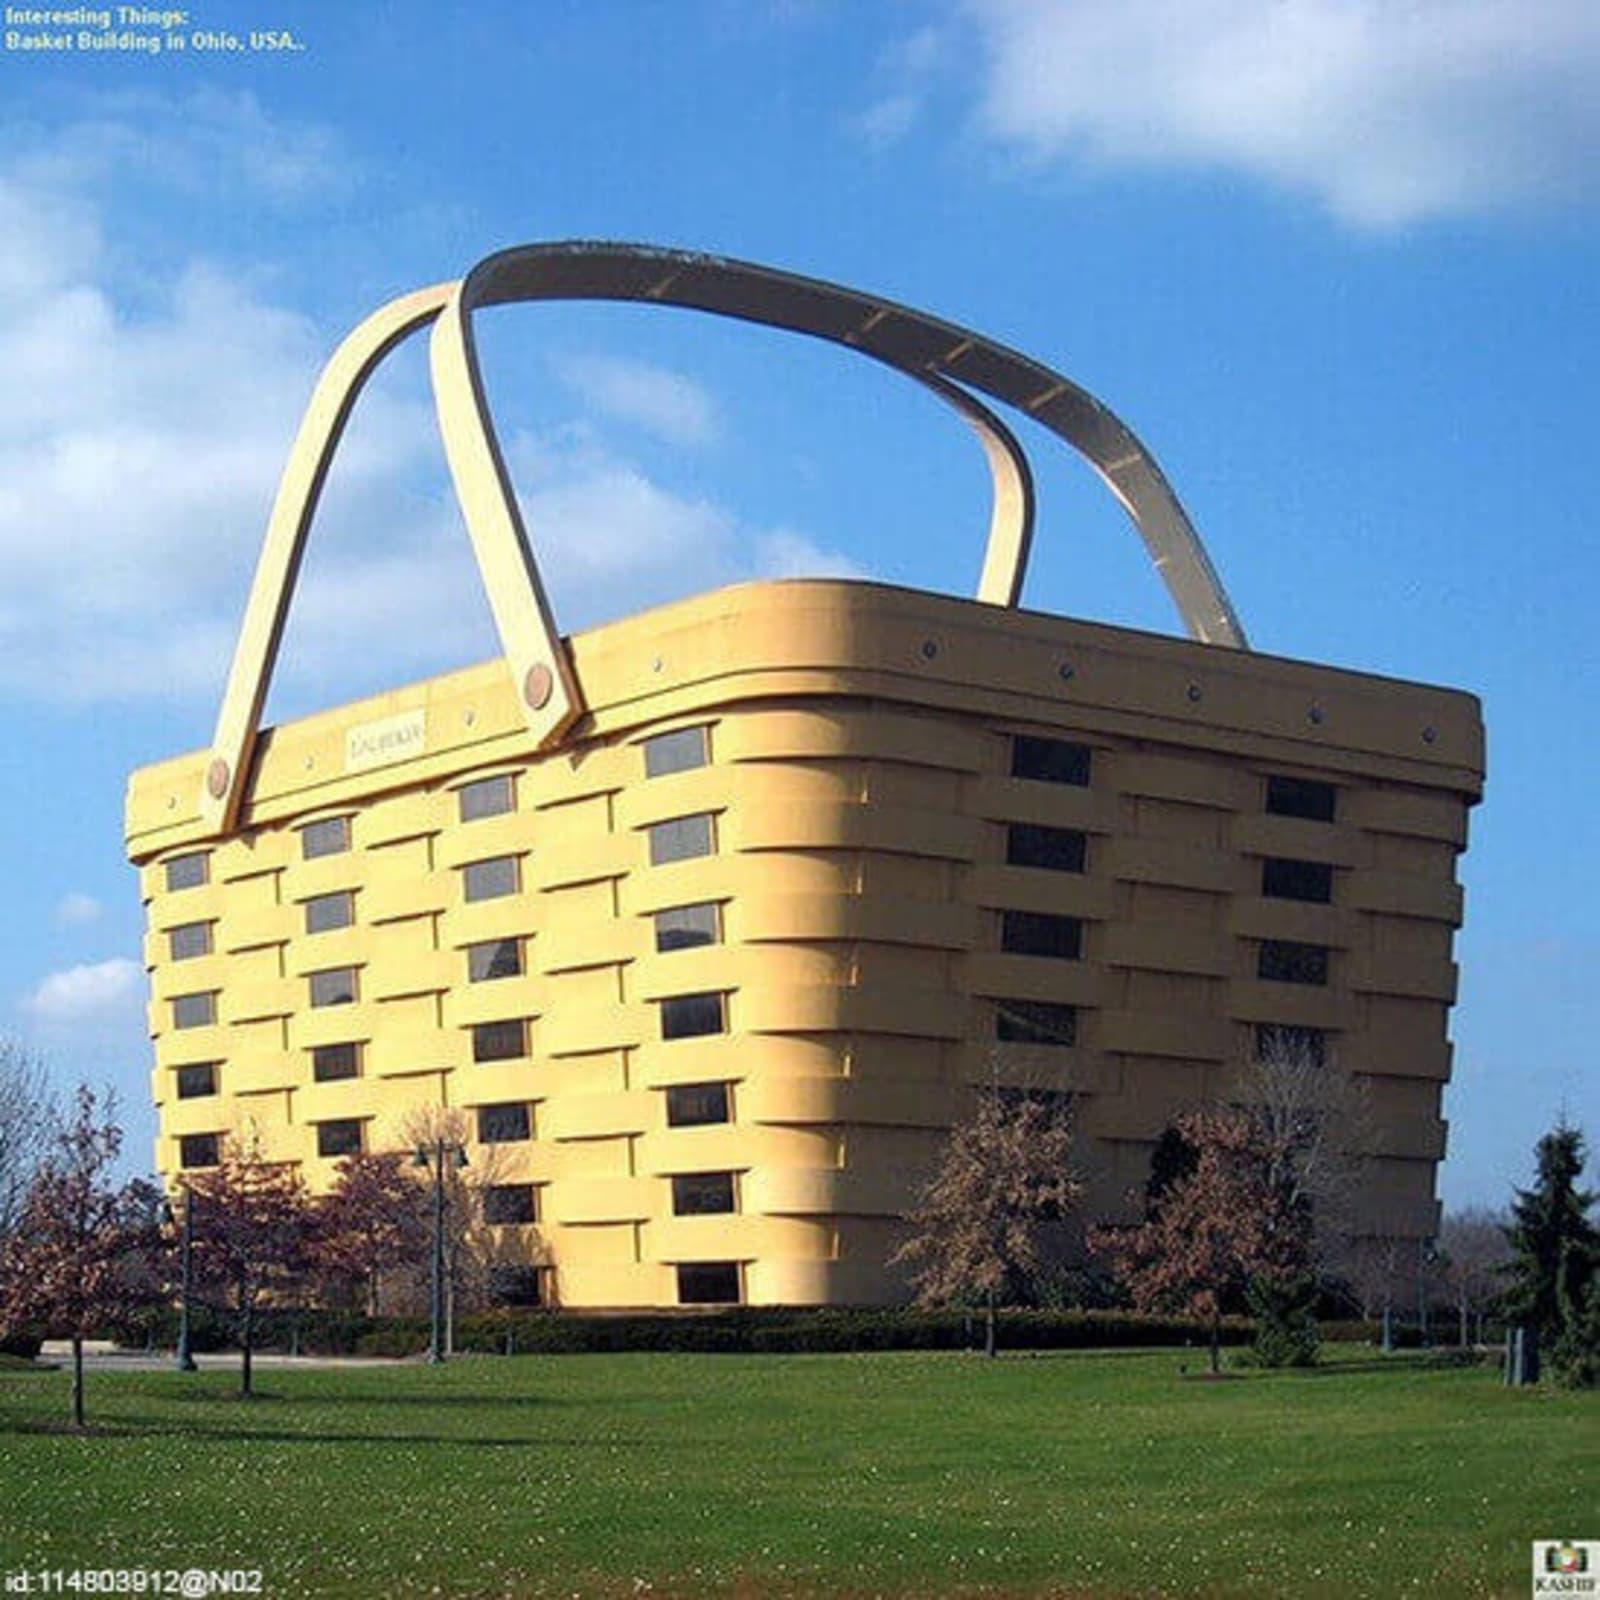 RS-Basket-Building-Ohio-flickr-id-114803912@N02.jpg